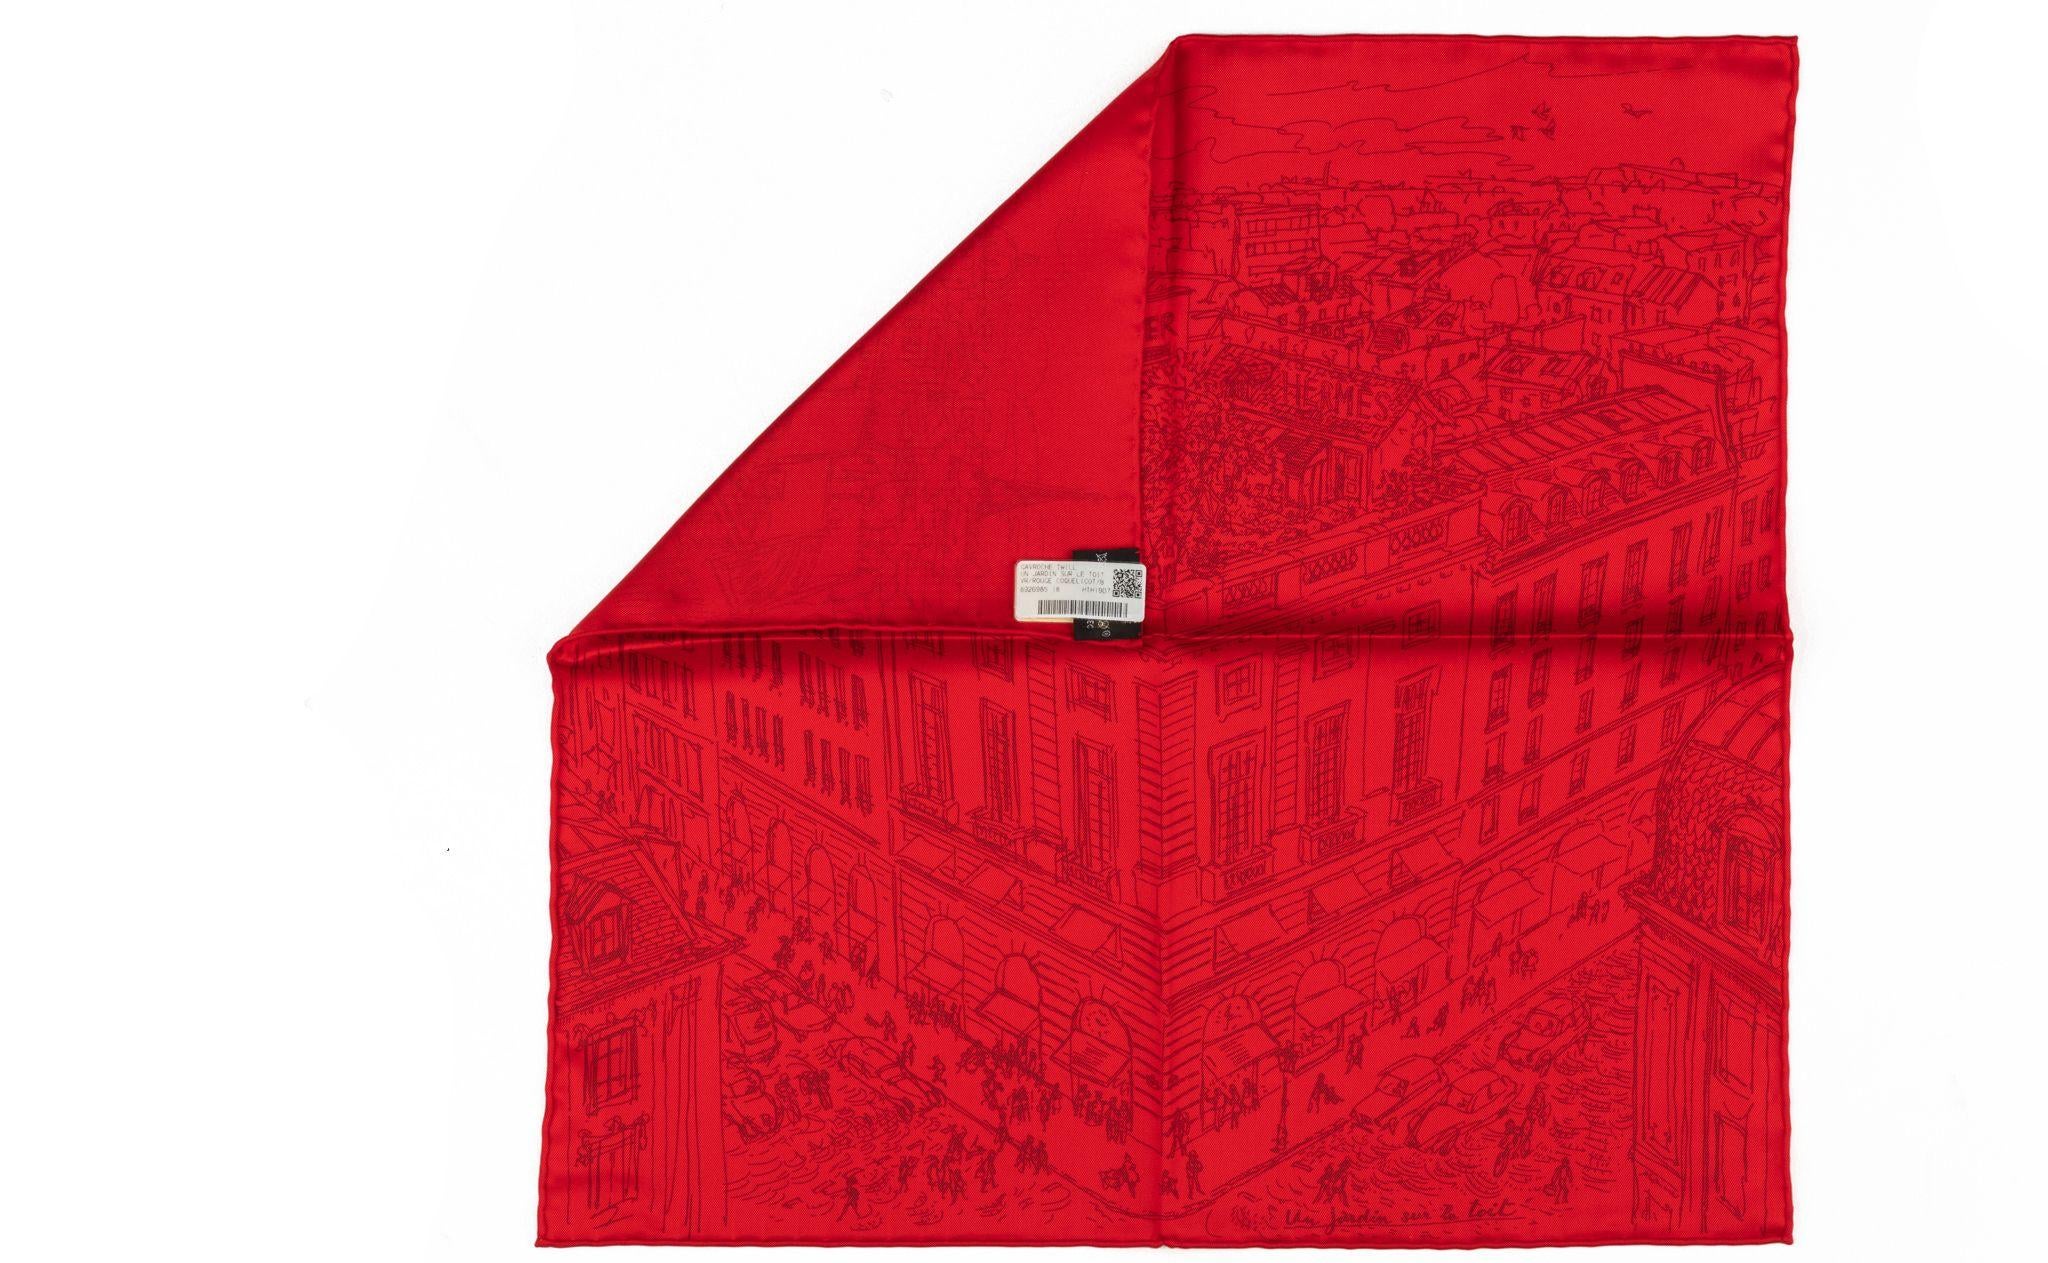 Hermès brand new silk gavroche , red color, Rue Fouburg store design. Comes with original box.